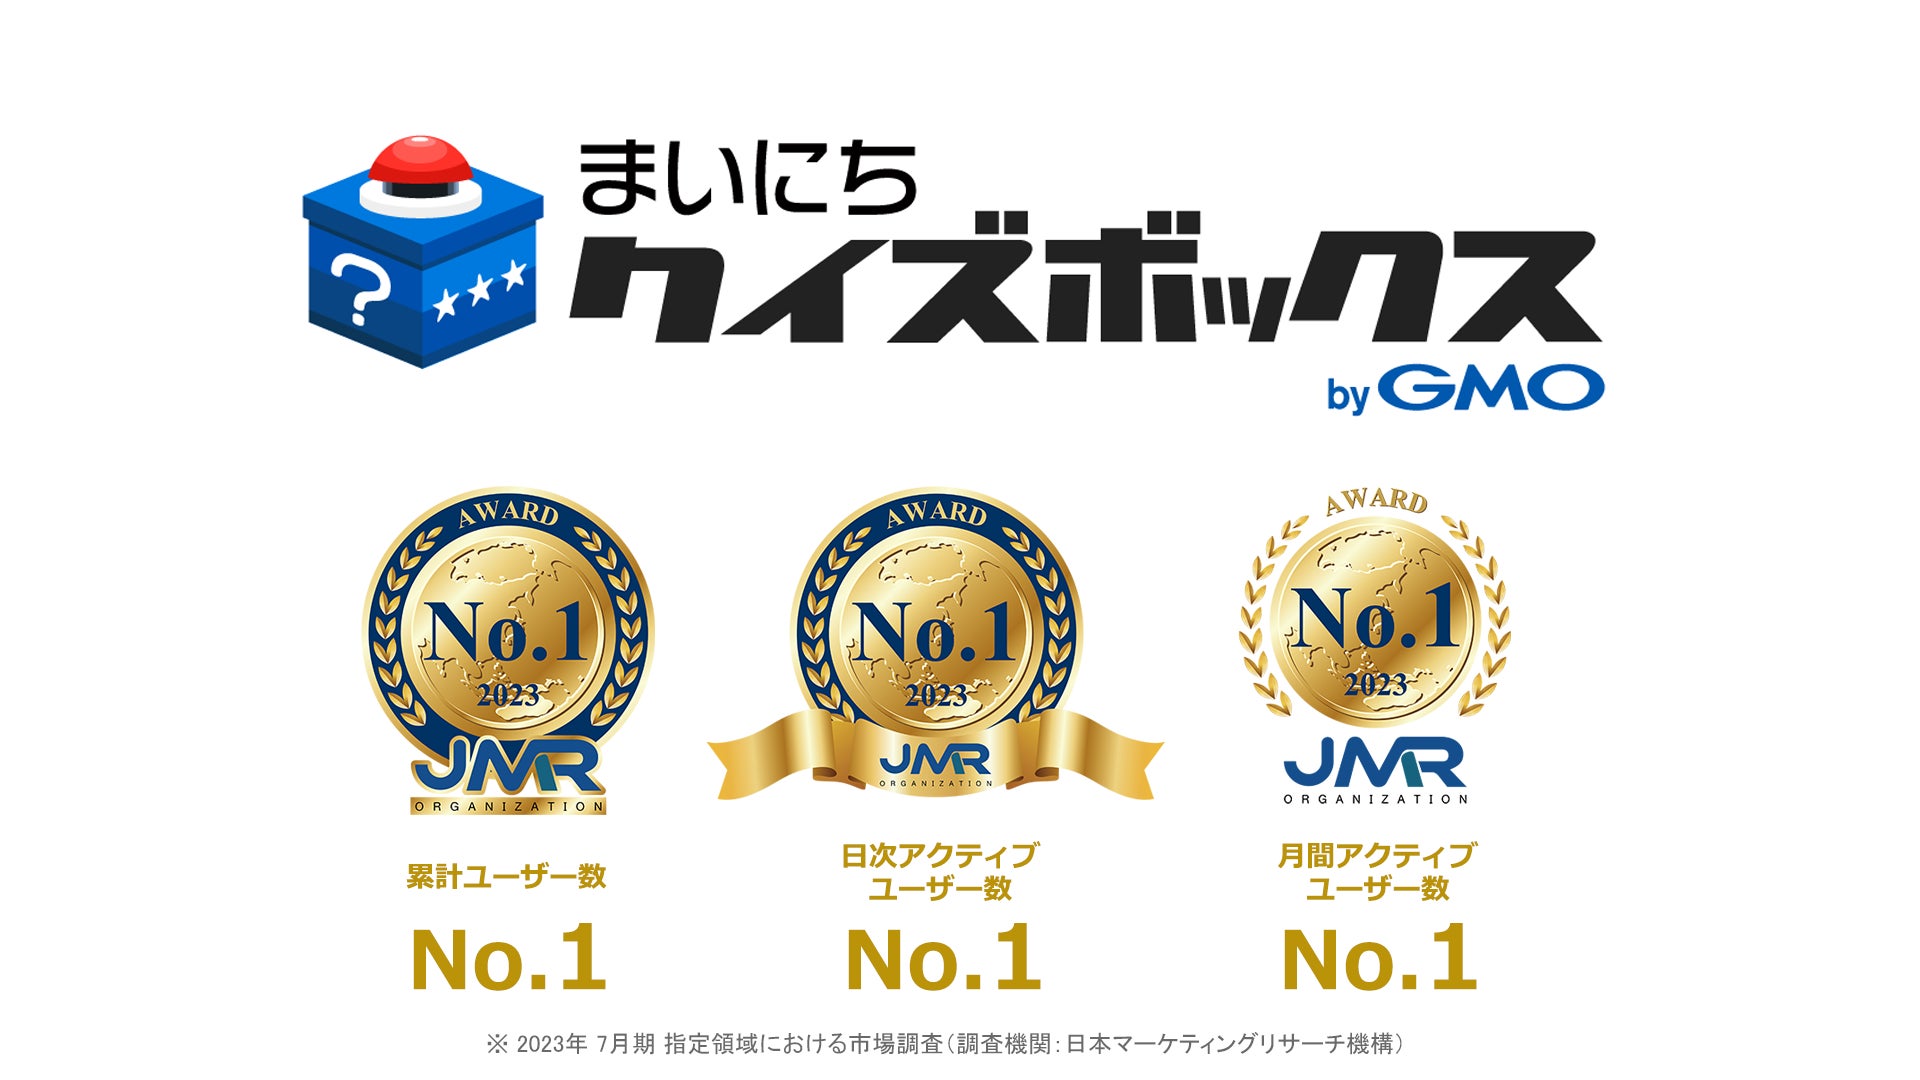 「まいにちクイズボックス byGMO」がユーザー数No.1を獲得！2023年6月度の月間アクティブユーザー数は259万人を突破【GMOメディア】